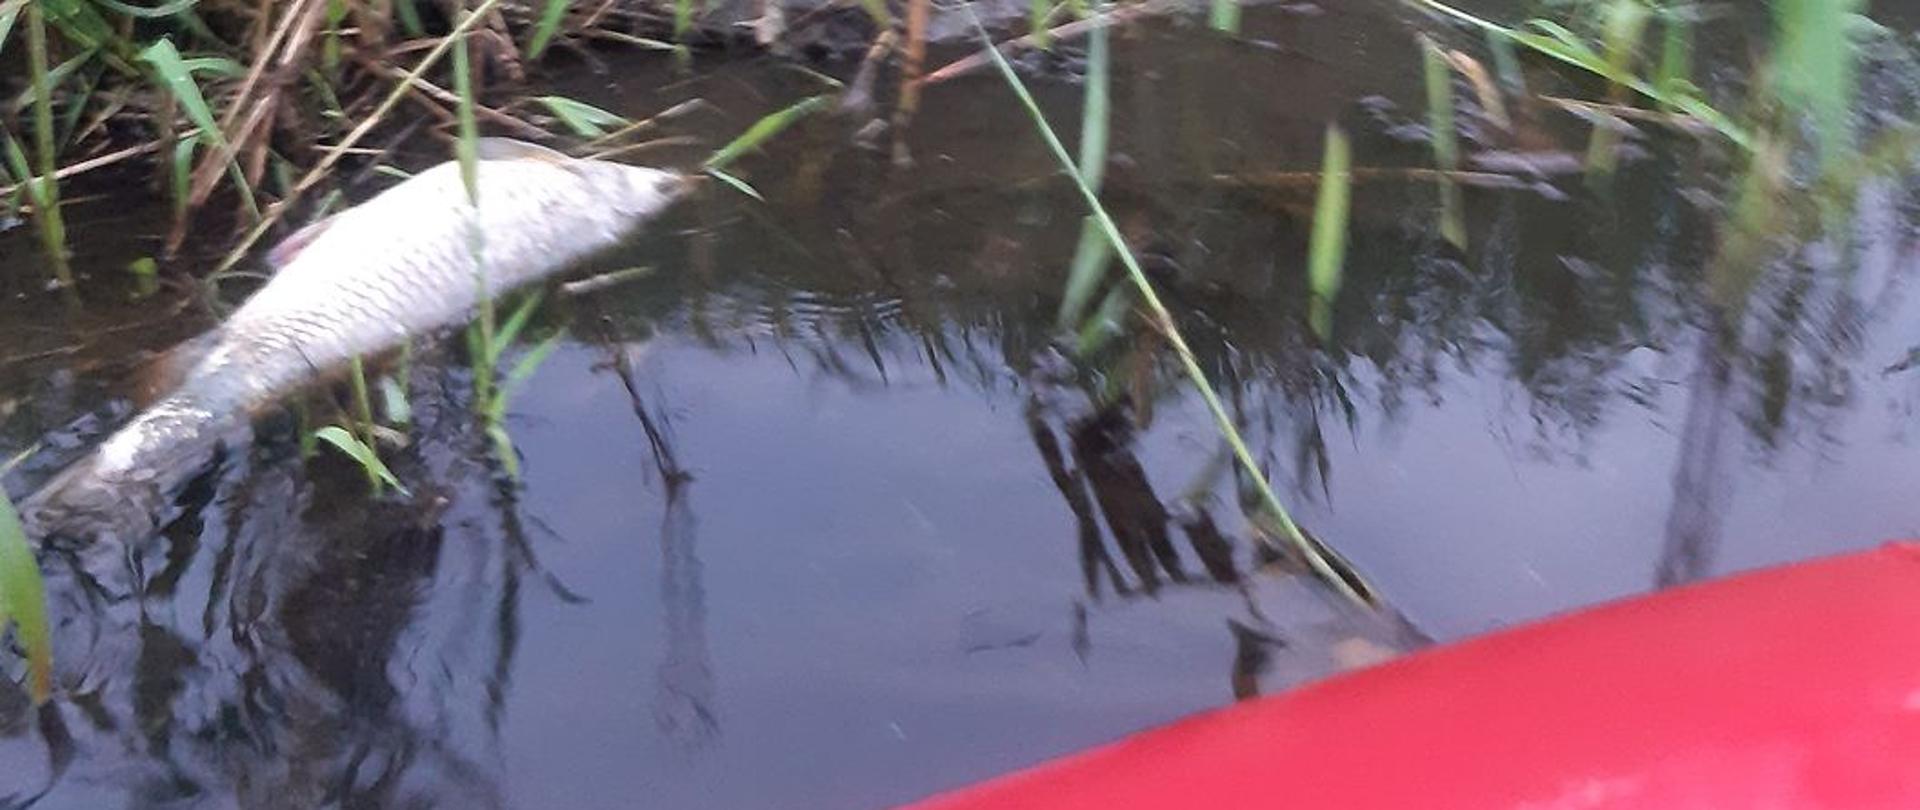 Na zdjęciu widać martwą rybę w wodzie przy brzegu. W wodzie i na brzegu rosną zielone rośliny. Zdjęcie zrobione jest z czerwonego pontonu, który częściowo widać. Jest widno.